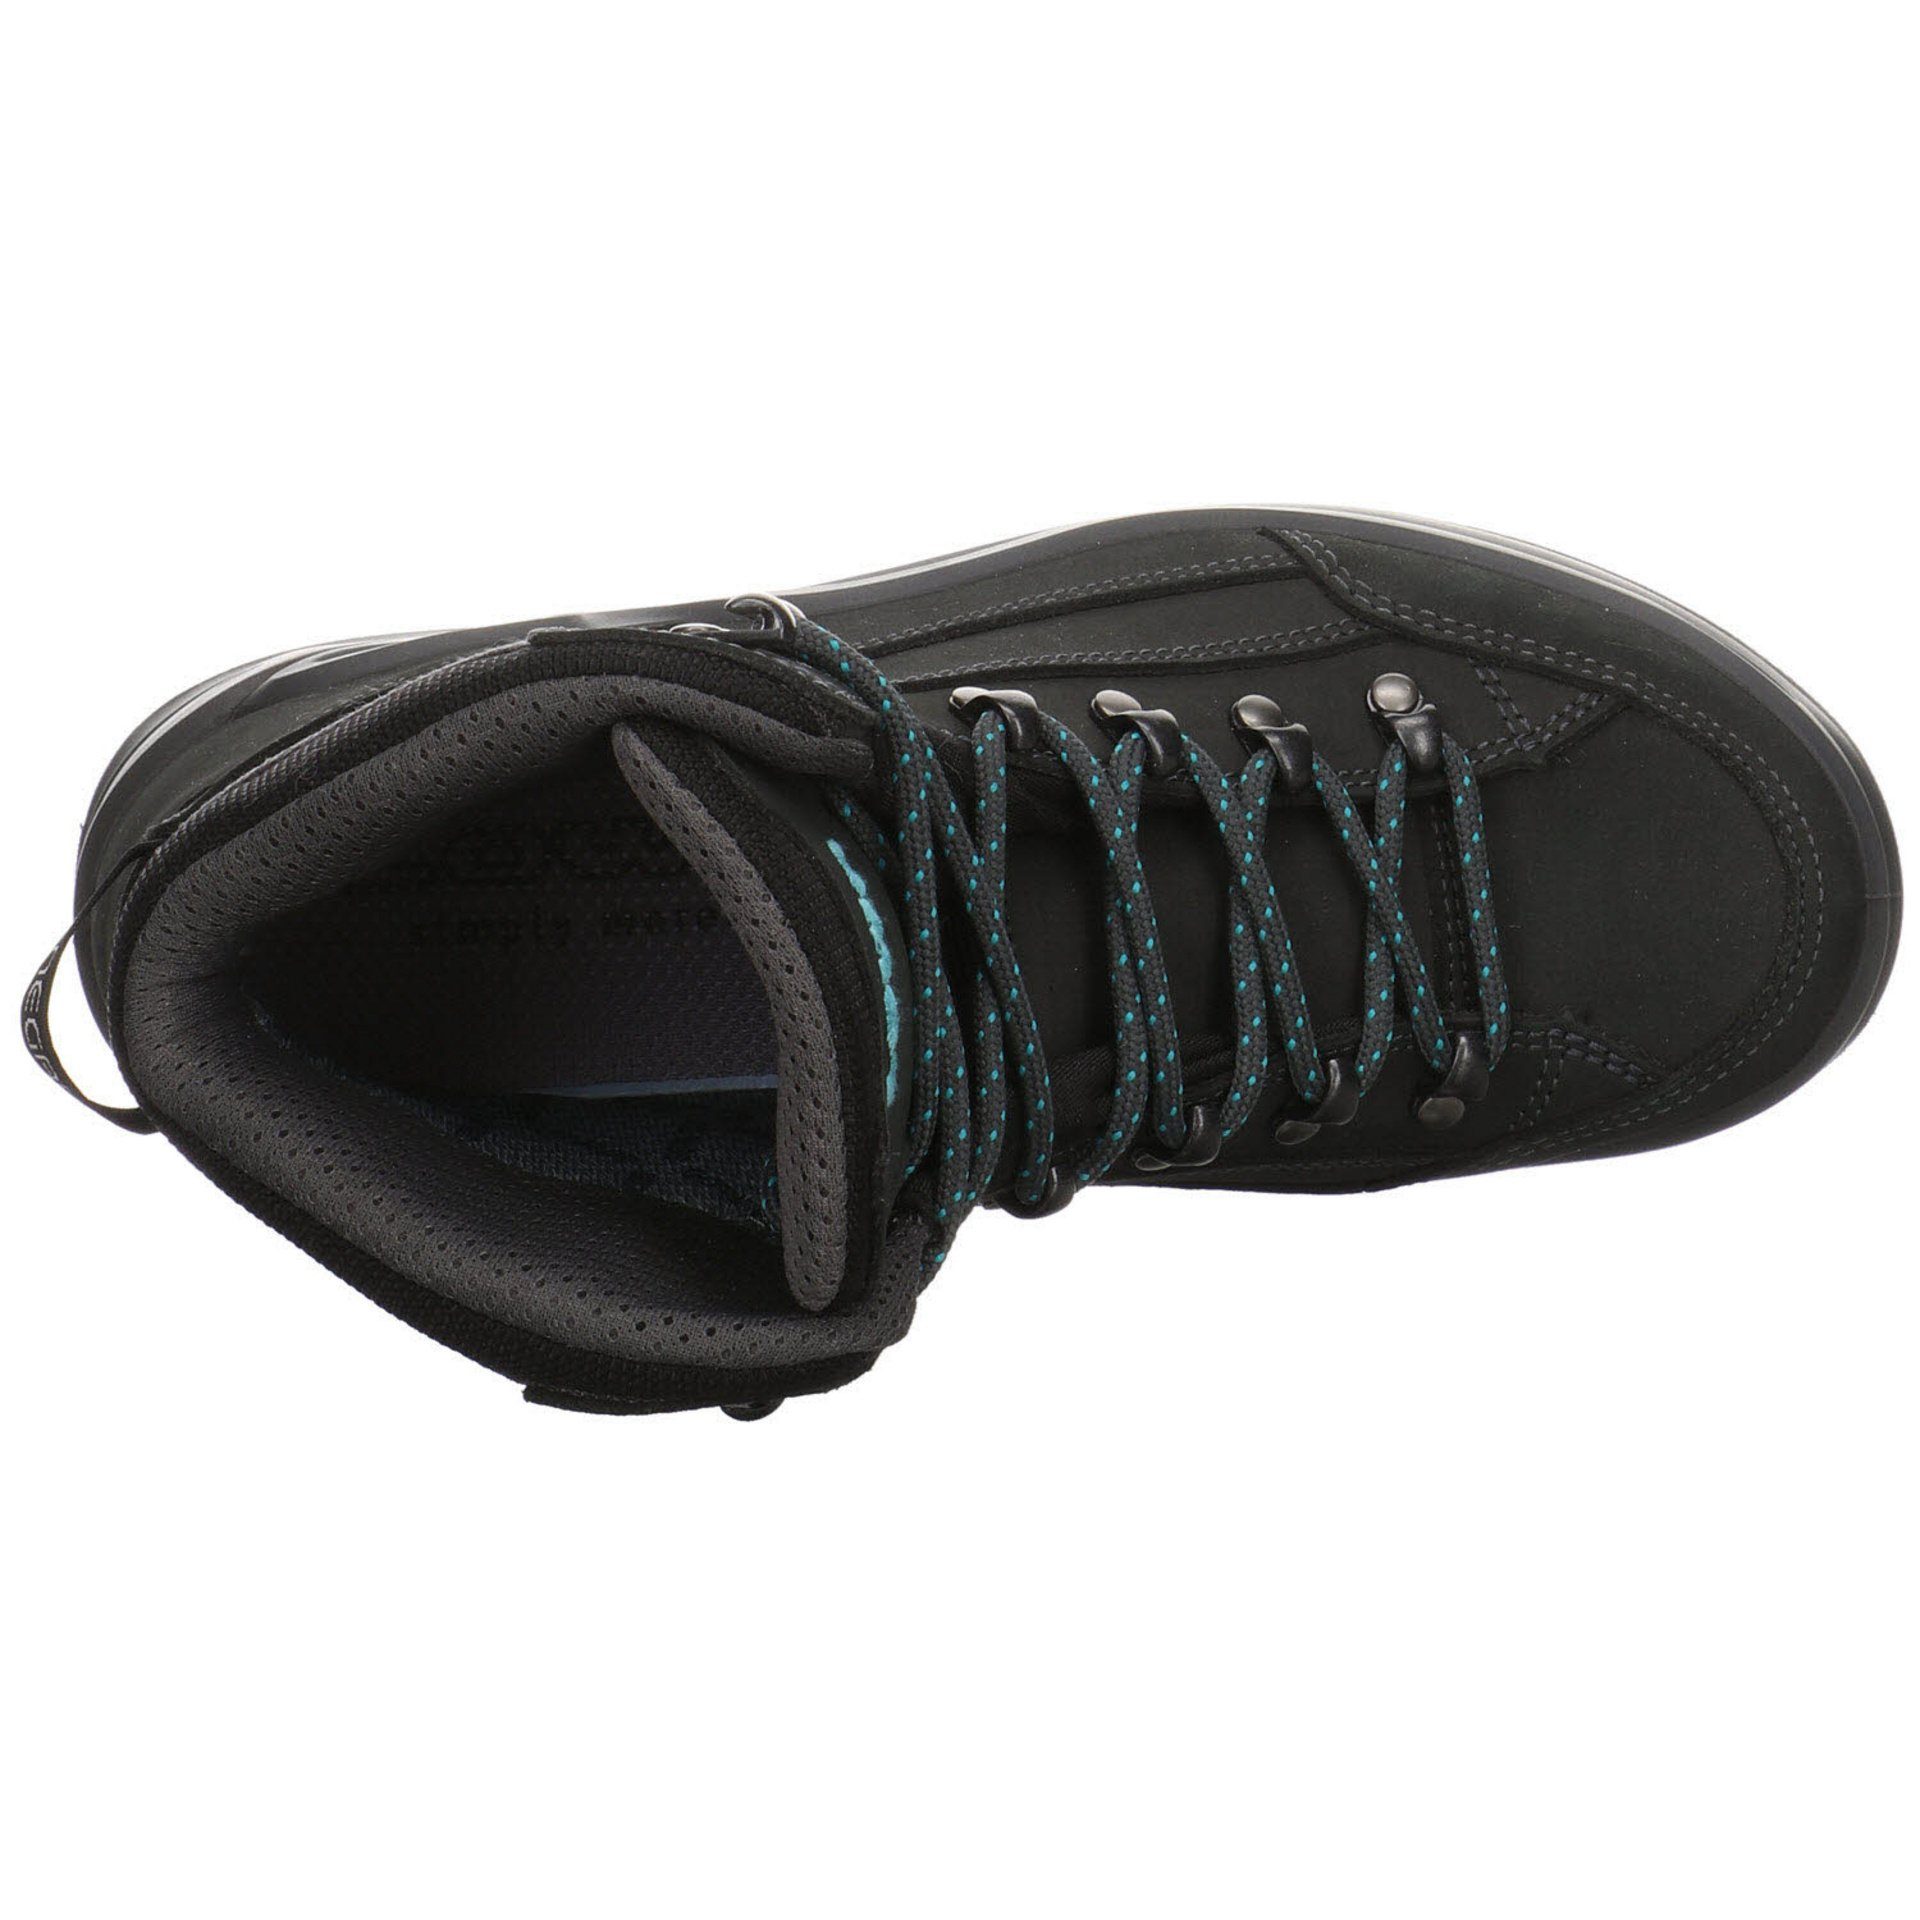 Lowa Damen Outdoorschuh Outdoorschuh ASPHALT/TÜRKIS Renegade Schuhe mid Leder-/Textilkombination Outdoor GTX